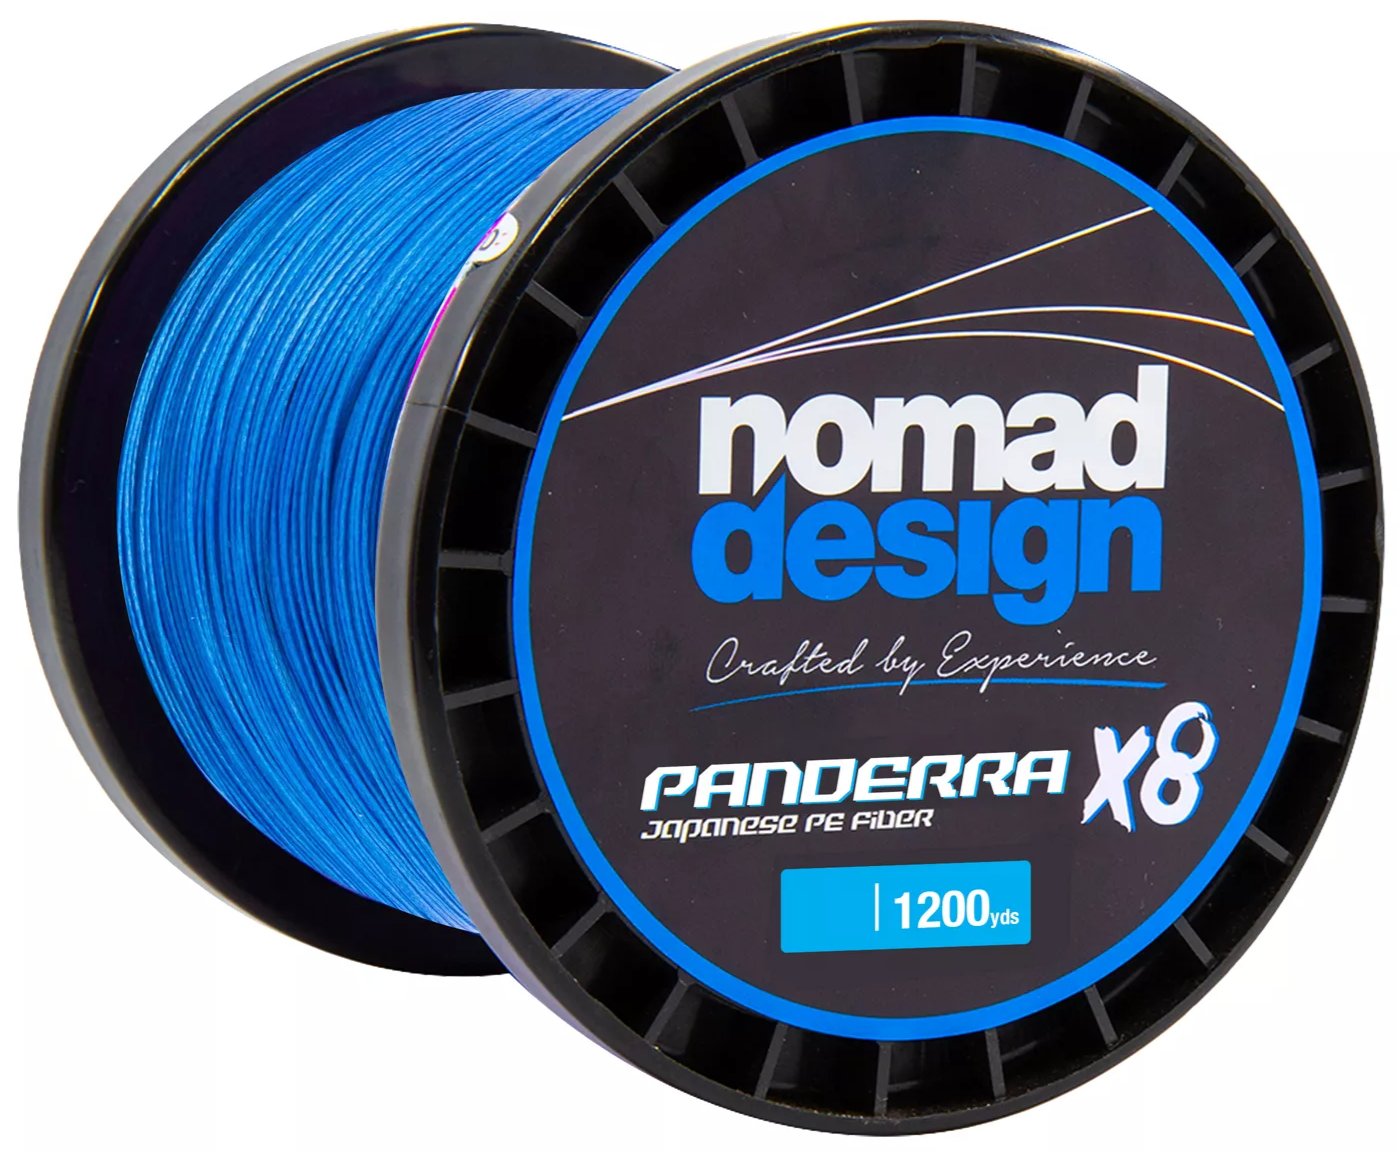 Nomad Design Panderra 8x Blue Braid 100 Pound / 1200 Yards